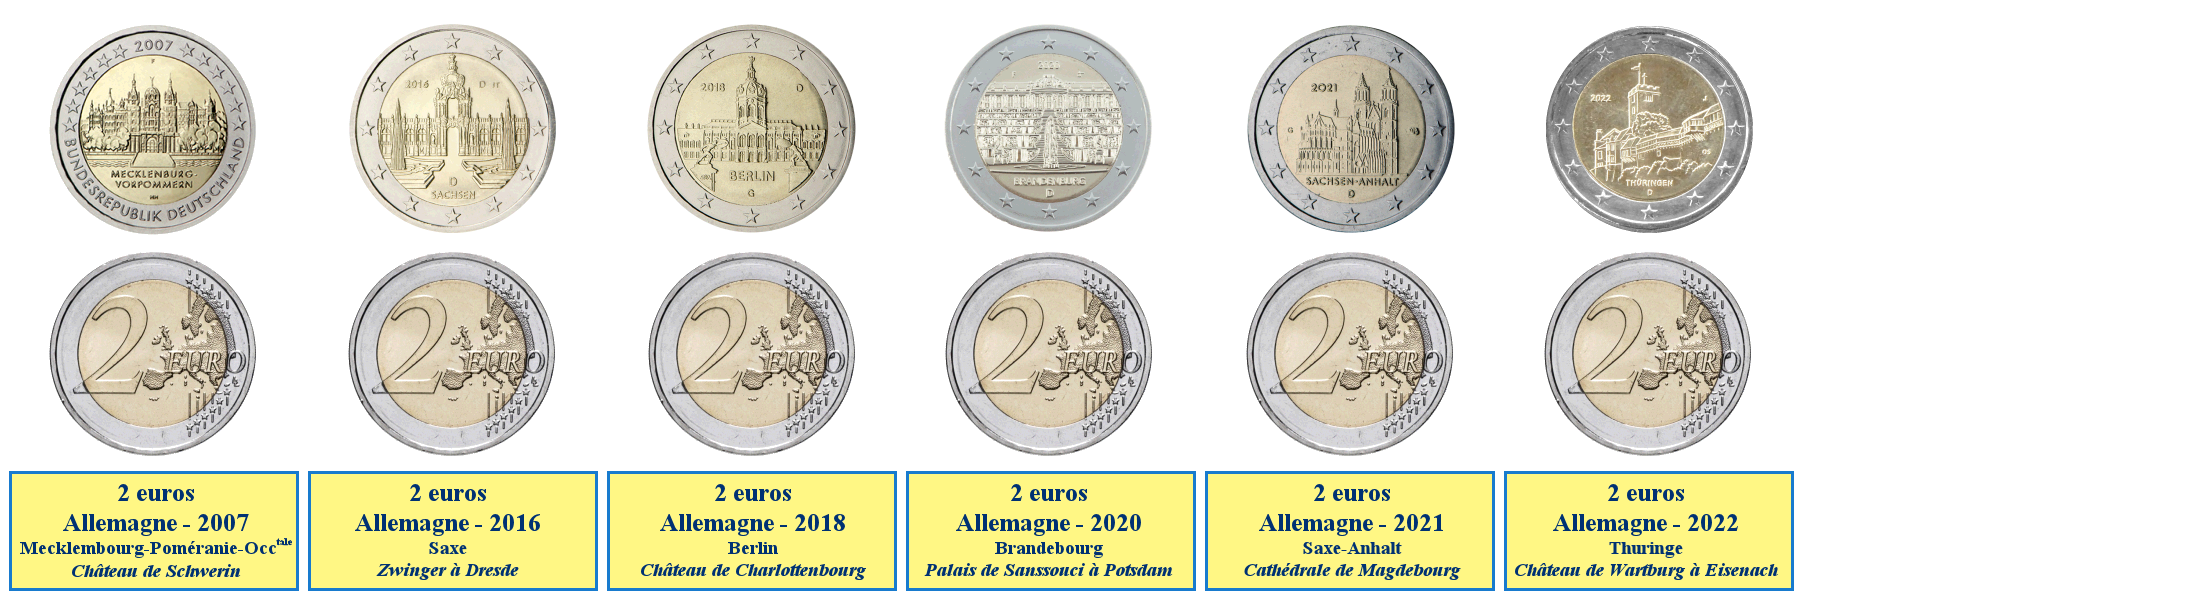 Photos de pièces de monnaies de 2 euros commémoratives des Länder de l'est de l'Allemagne